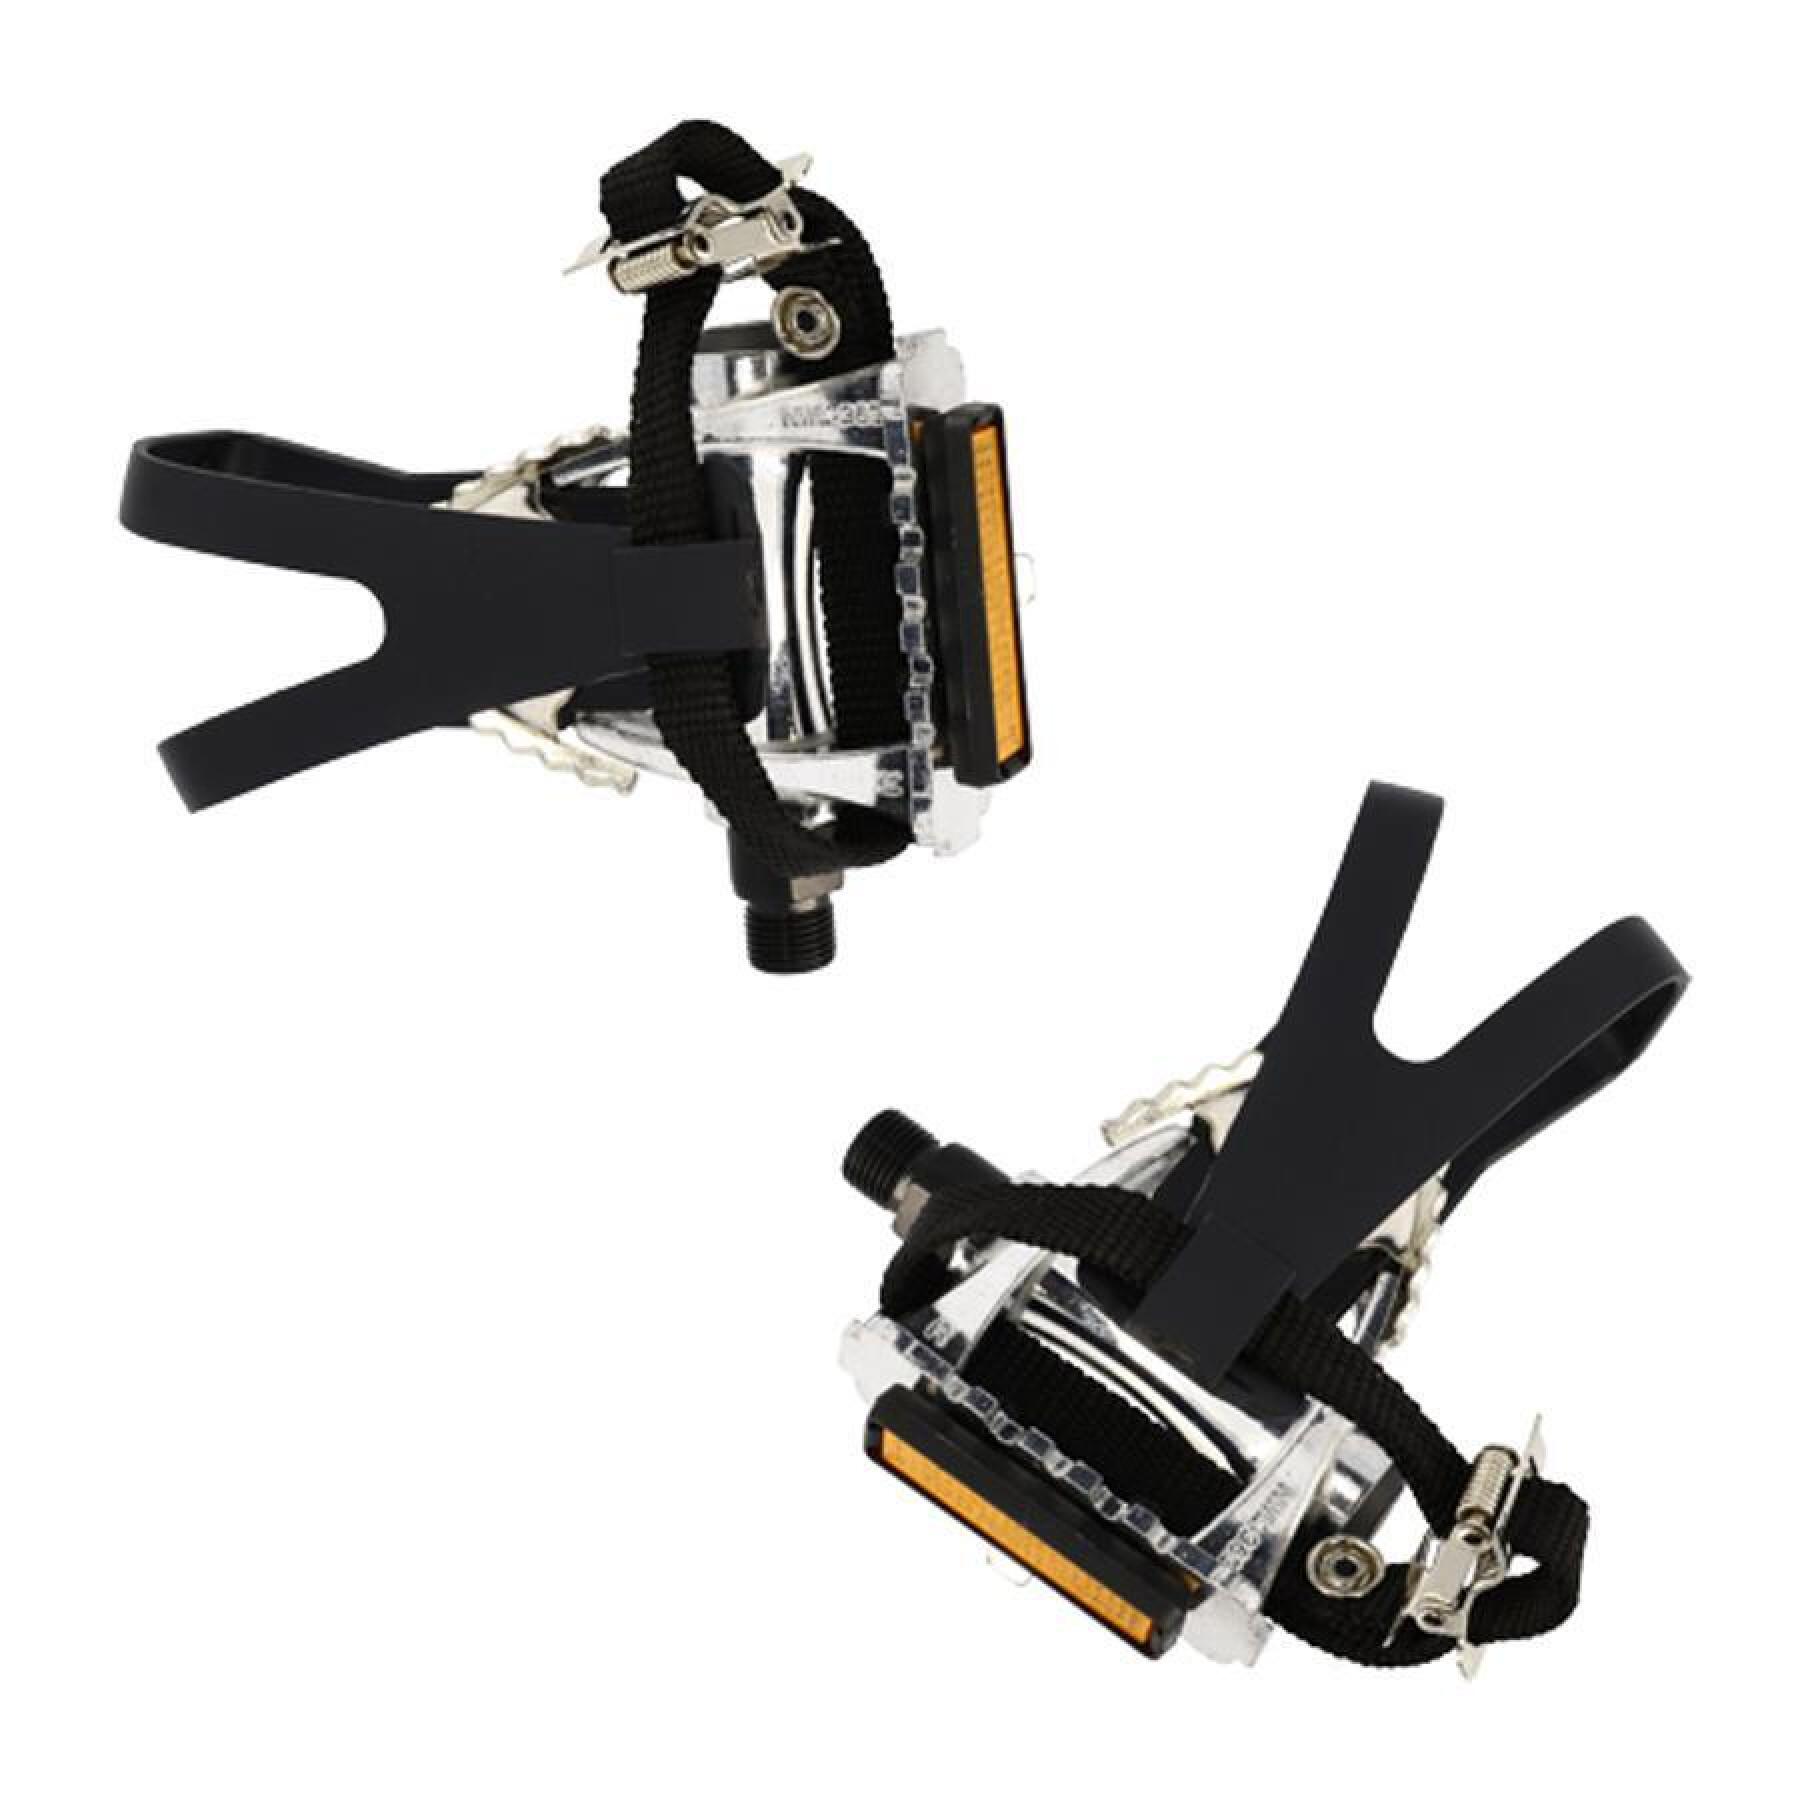 Pair of profiled aluminium pedals with toe cleats Optimiz